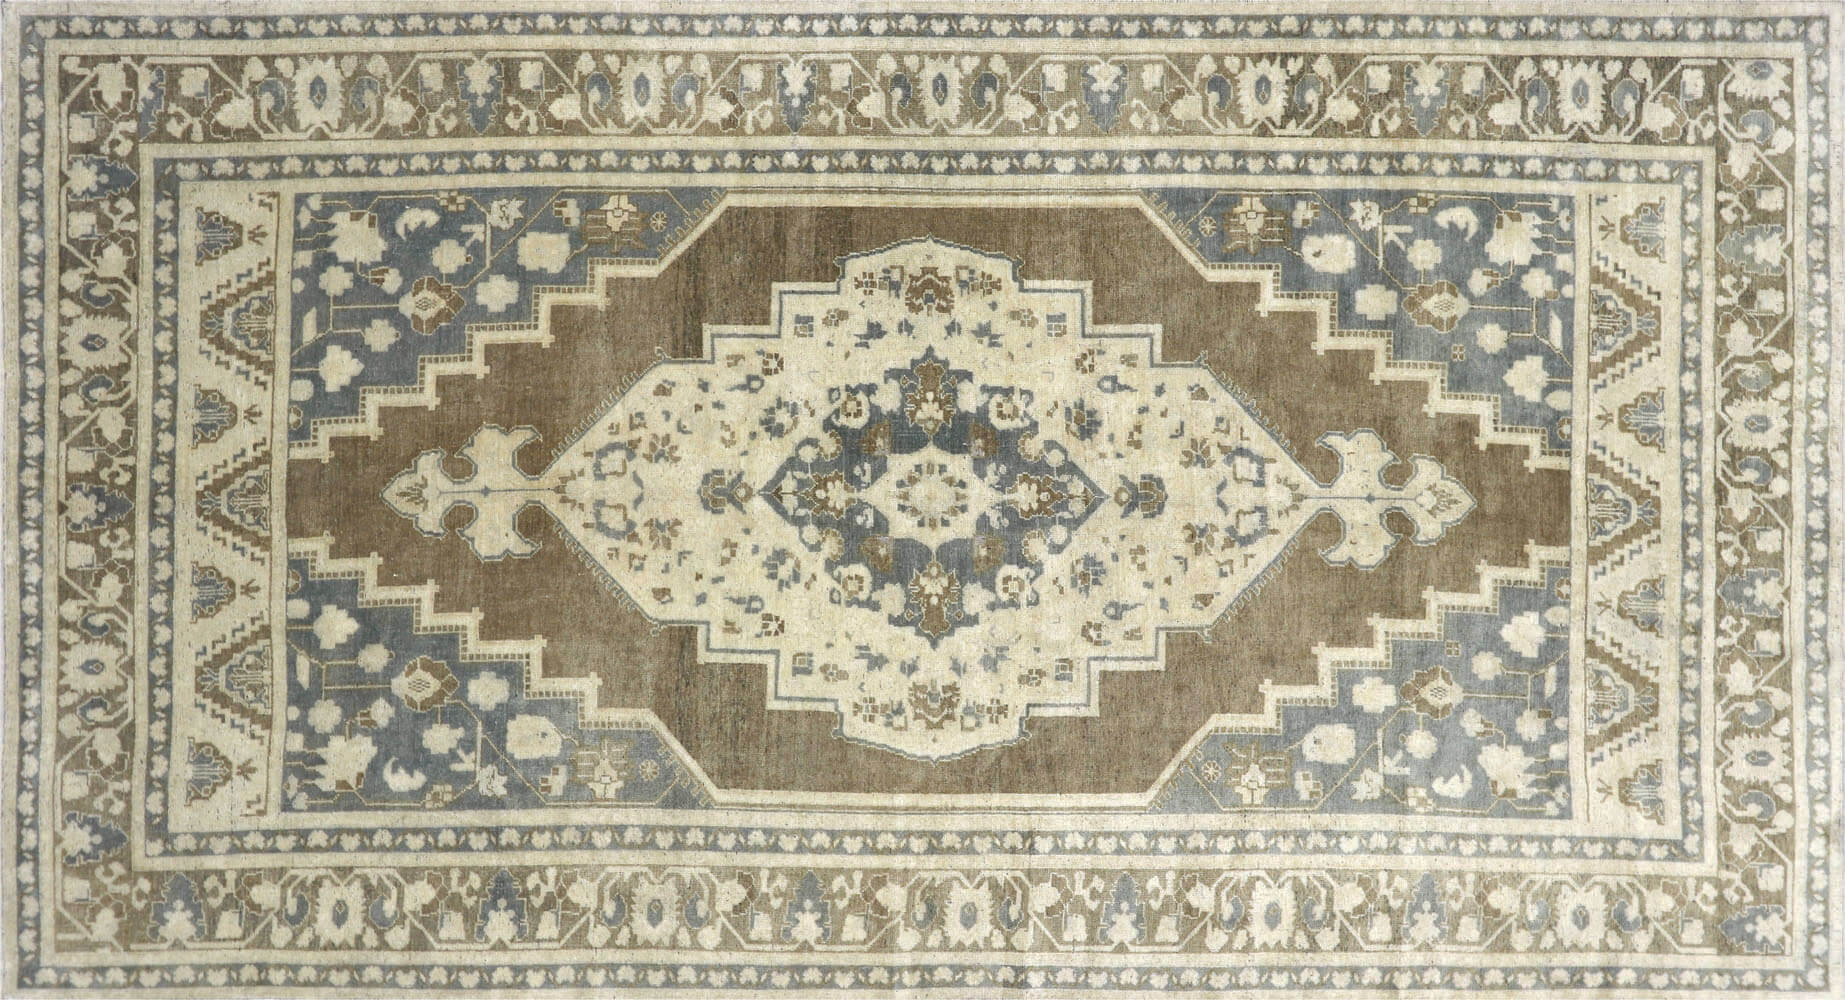 Vintage Turkish Oushak Carpet - 6'4" x 11'6"